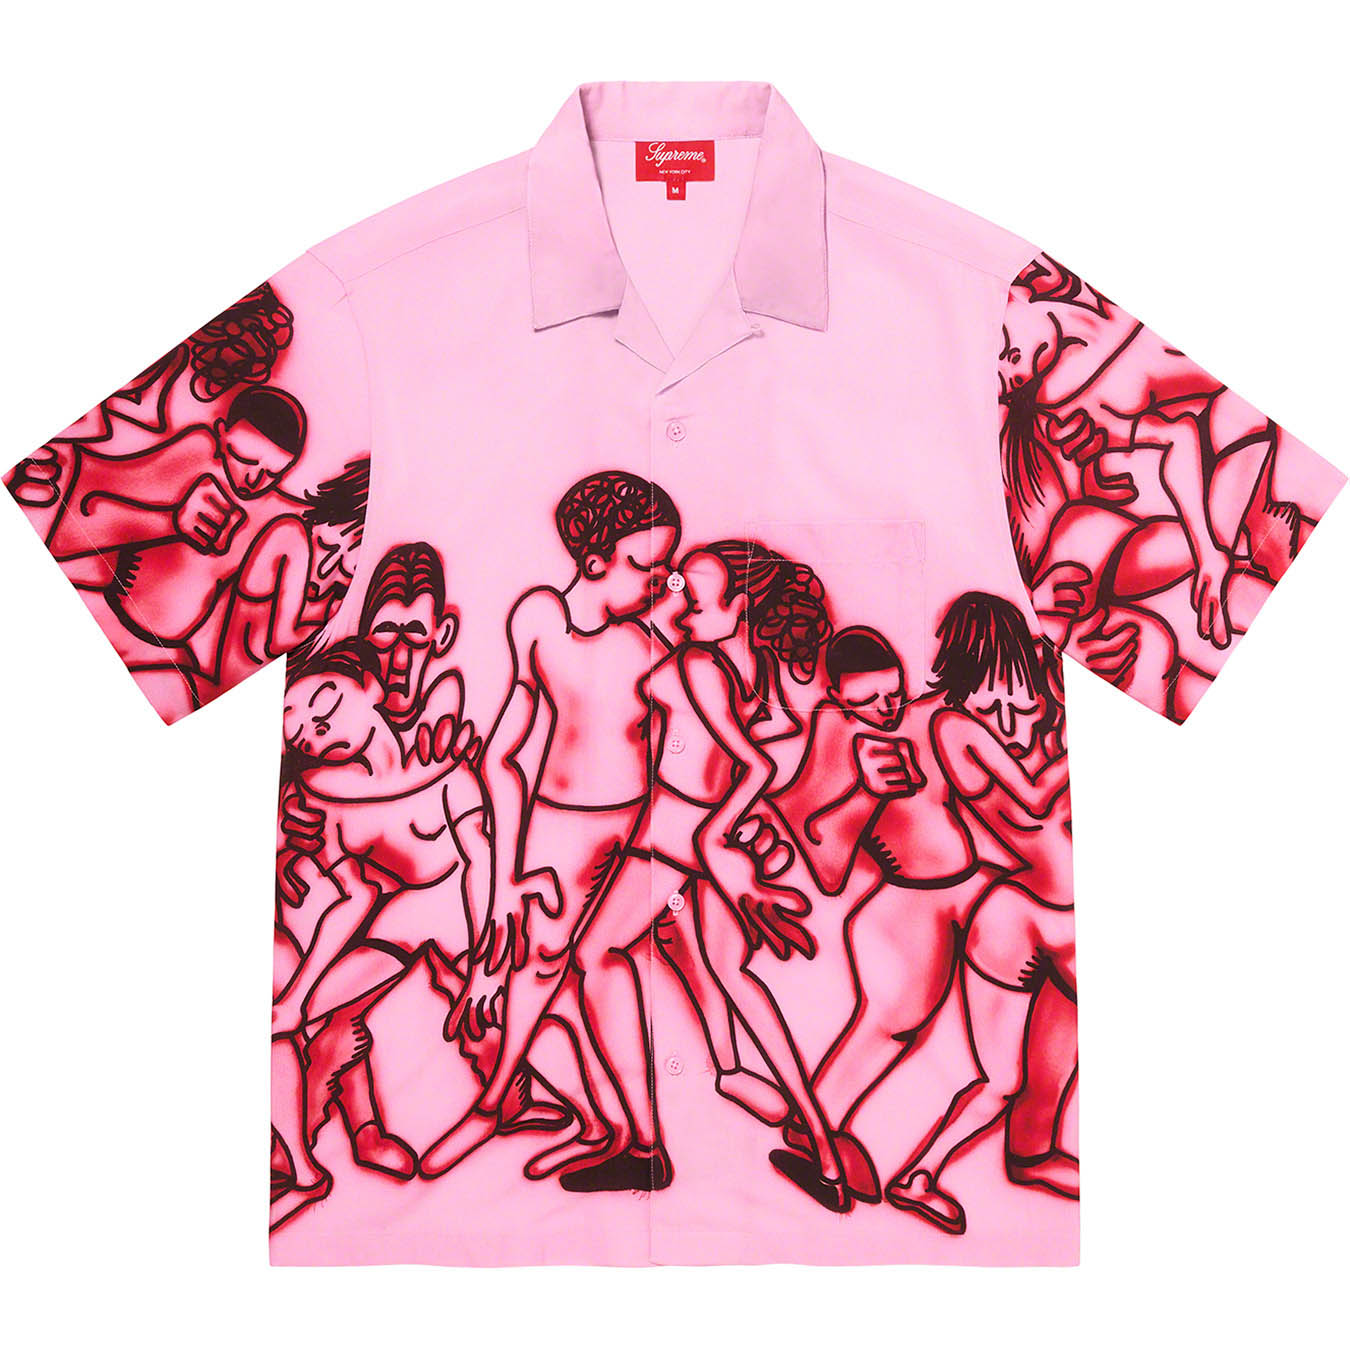 Supreme Dancing Rayon S/S Shirt